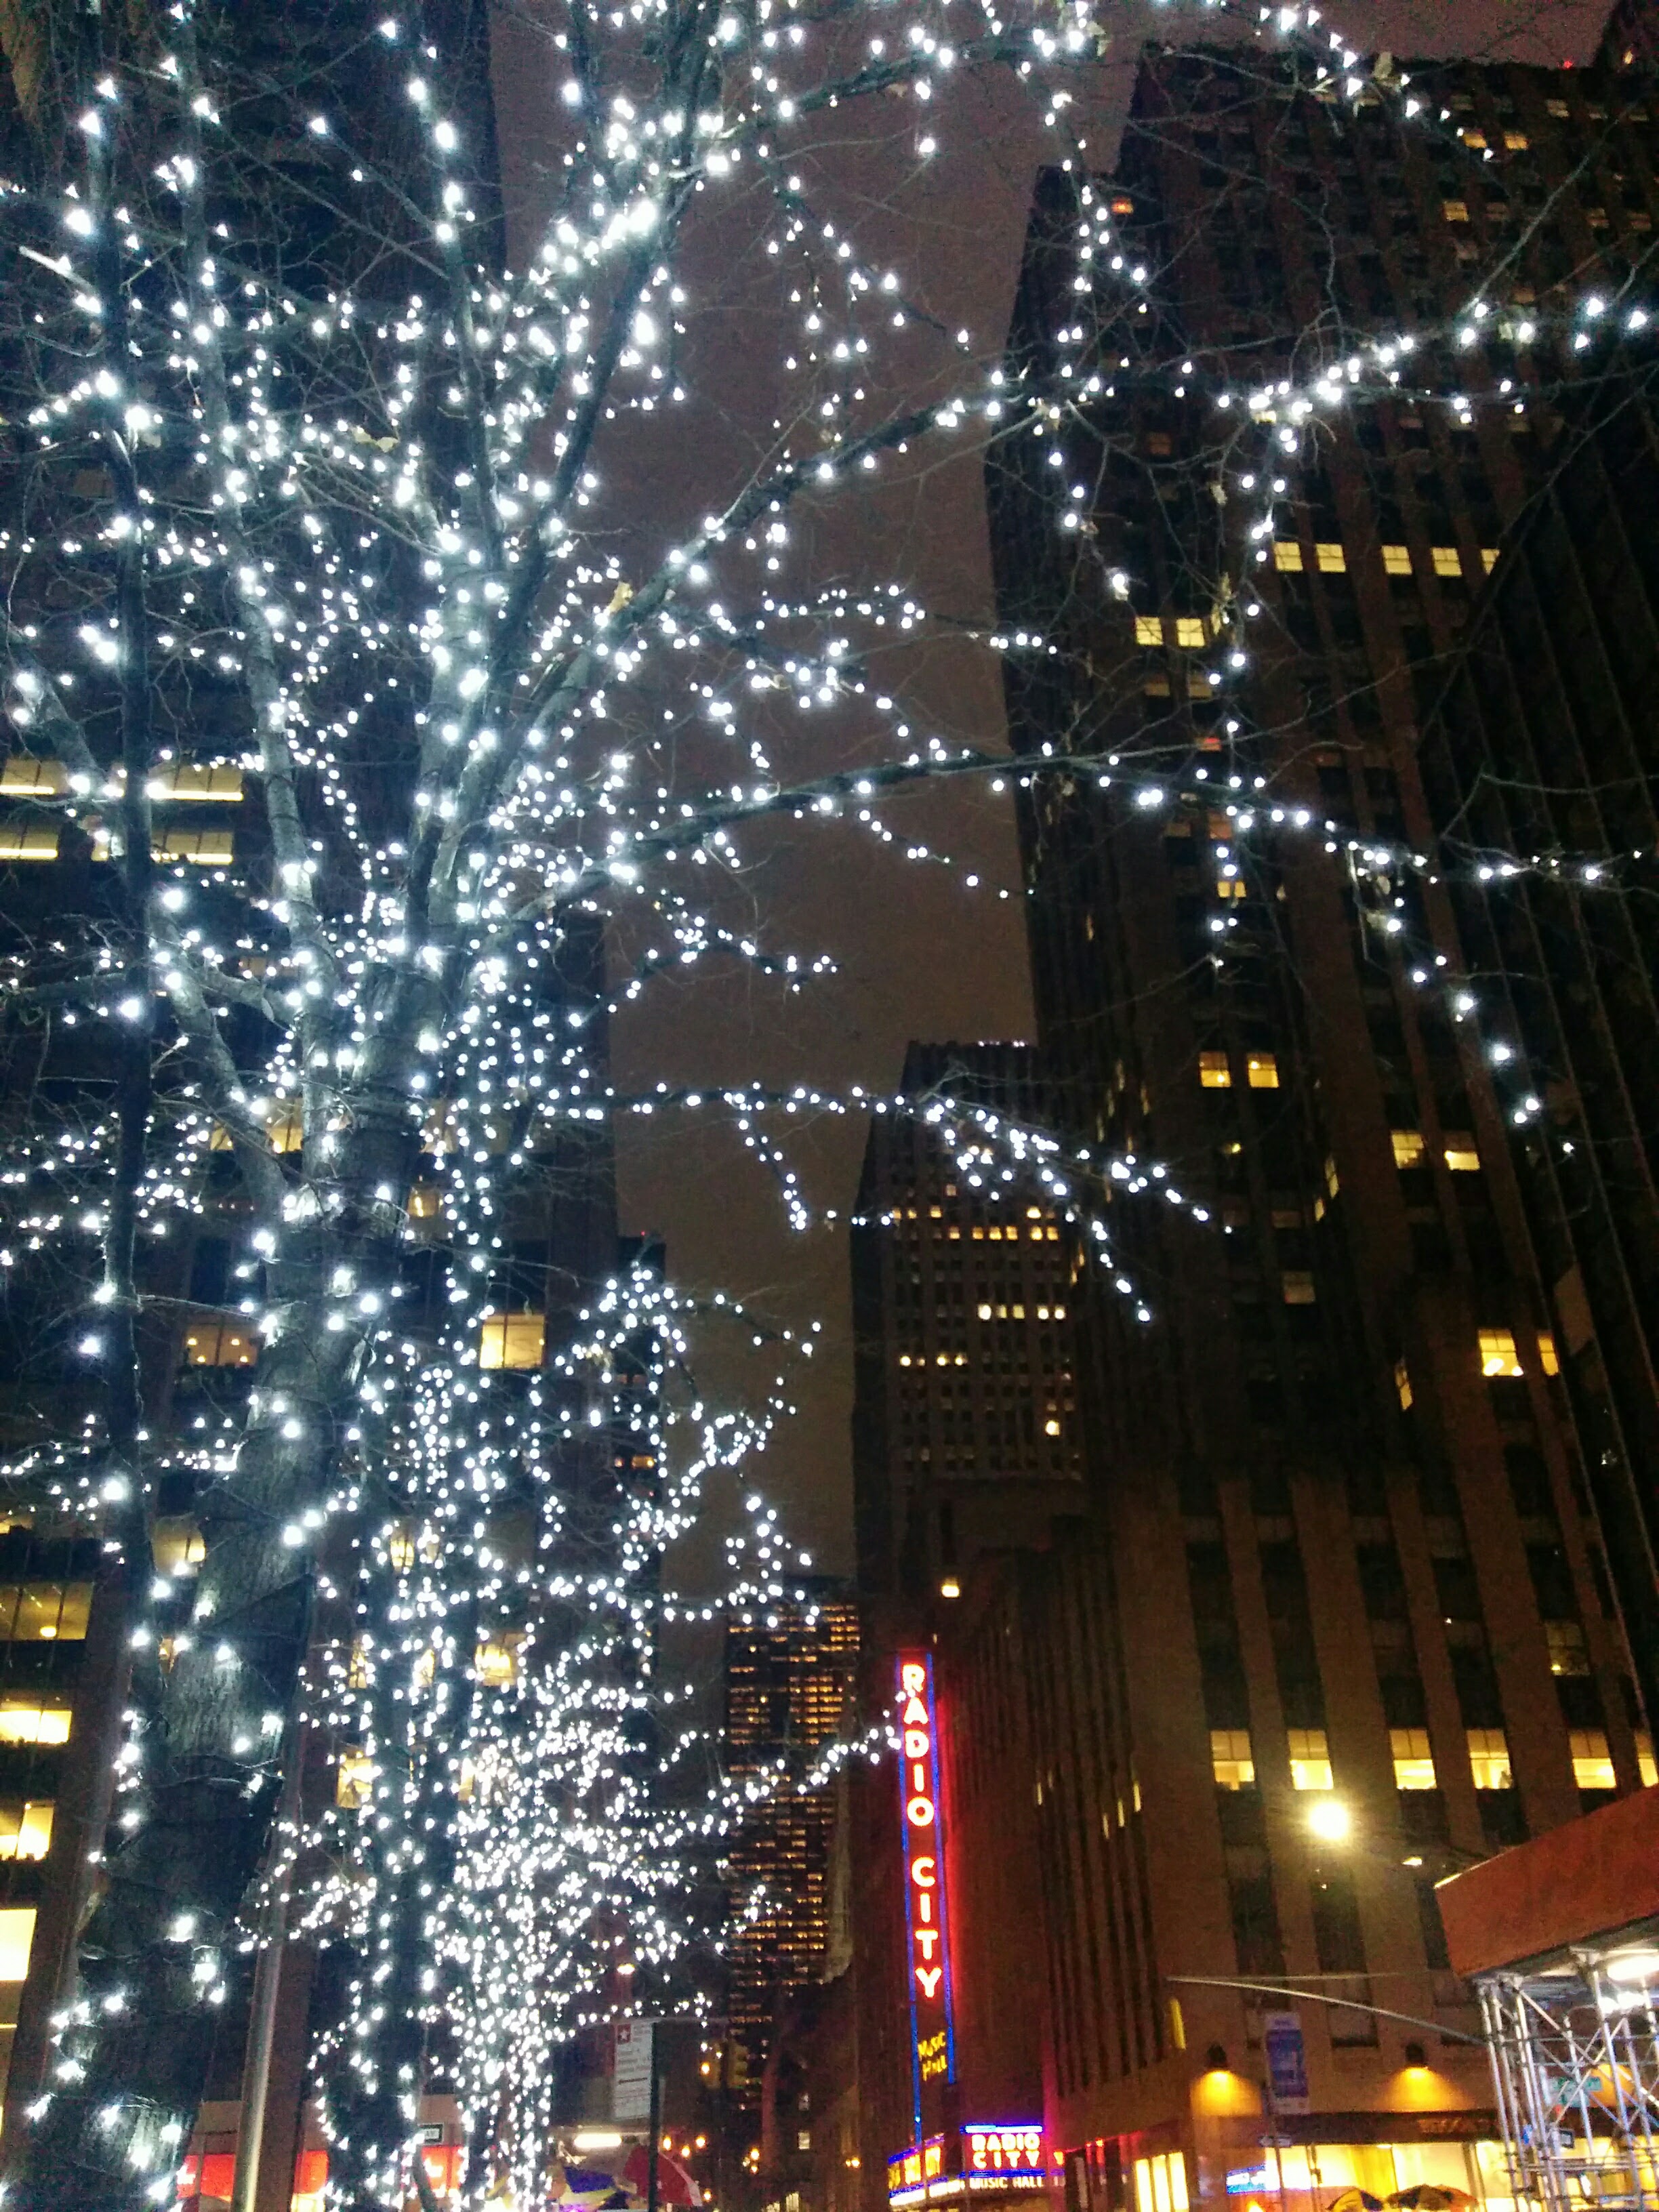 Lights on Tree by Radio City Music Hall